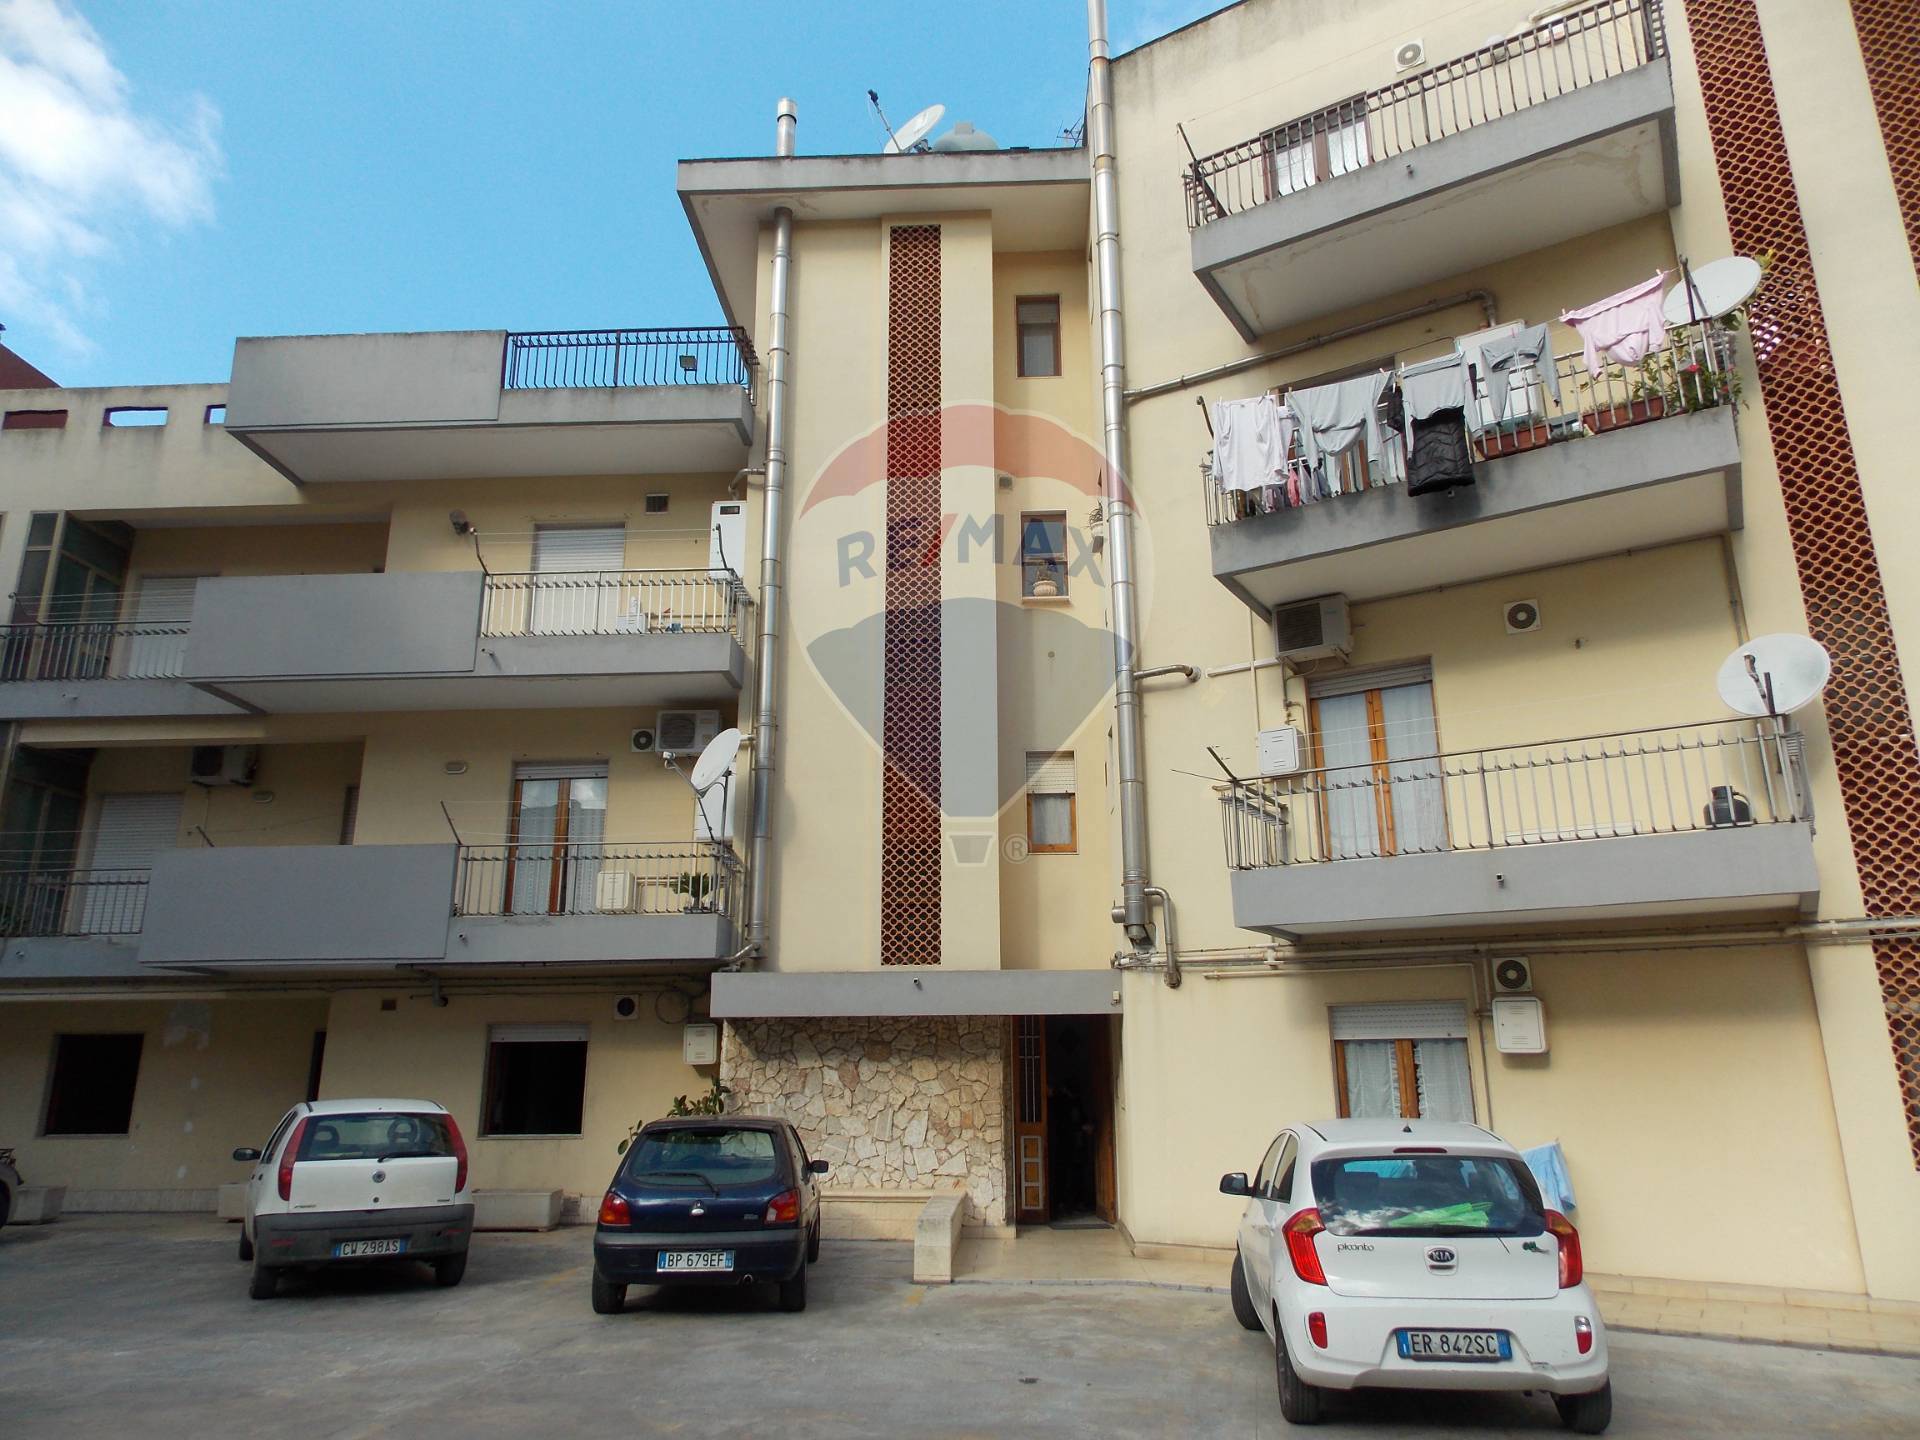 Appartamento in affitto a Ragusa, 6 locali, zona Località: VialeEuropa, prezzo € 350 | CambioCasa.it